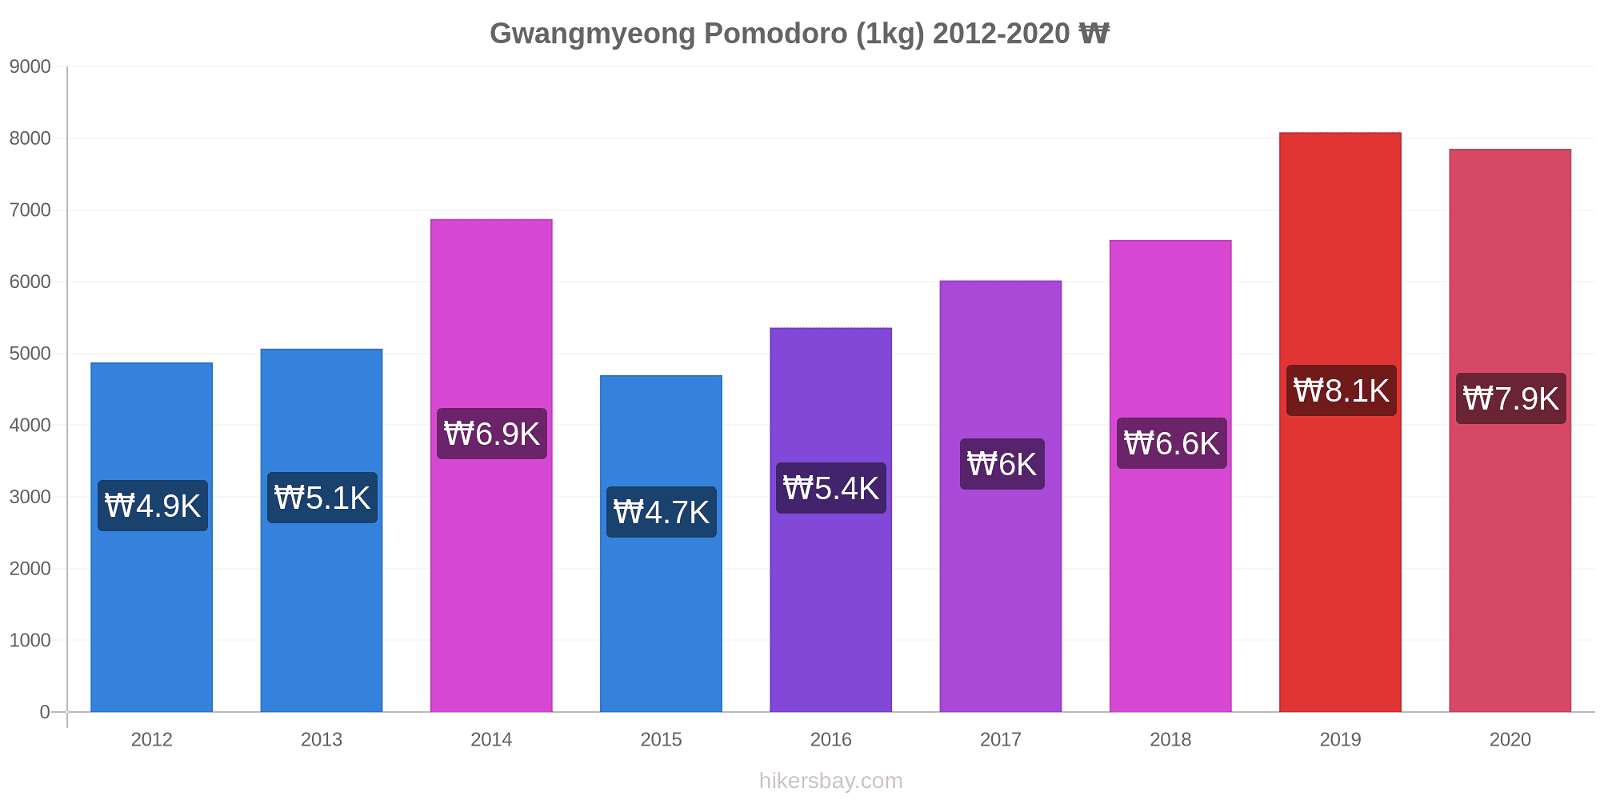 Gwangmyeong variazioni di prezzo Pomodoro (1kg) hikersbay.com